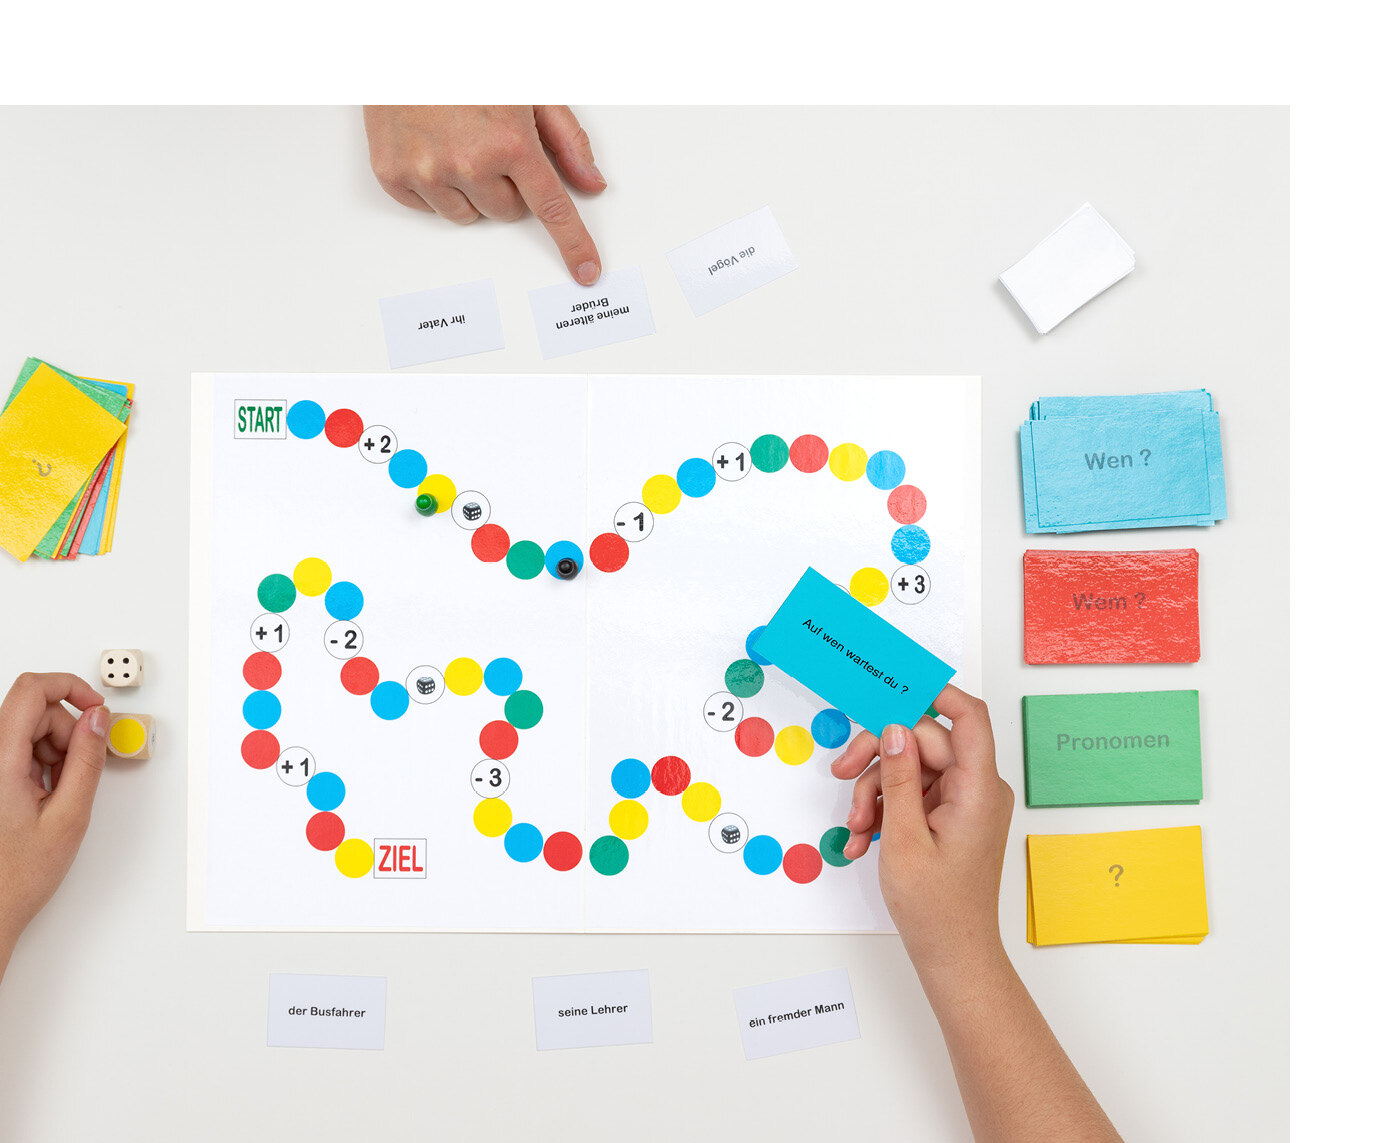 Spielfiguren stehen auf dem Spielfeld und Hände halten farbige Karten in der Hand, auf denen kurze Sätze stehen.